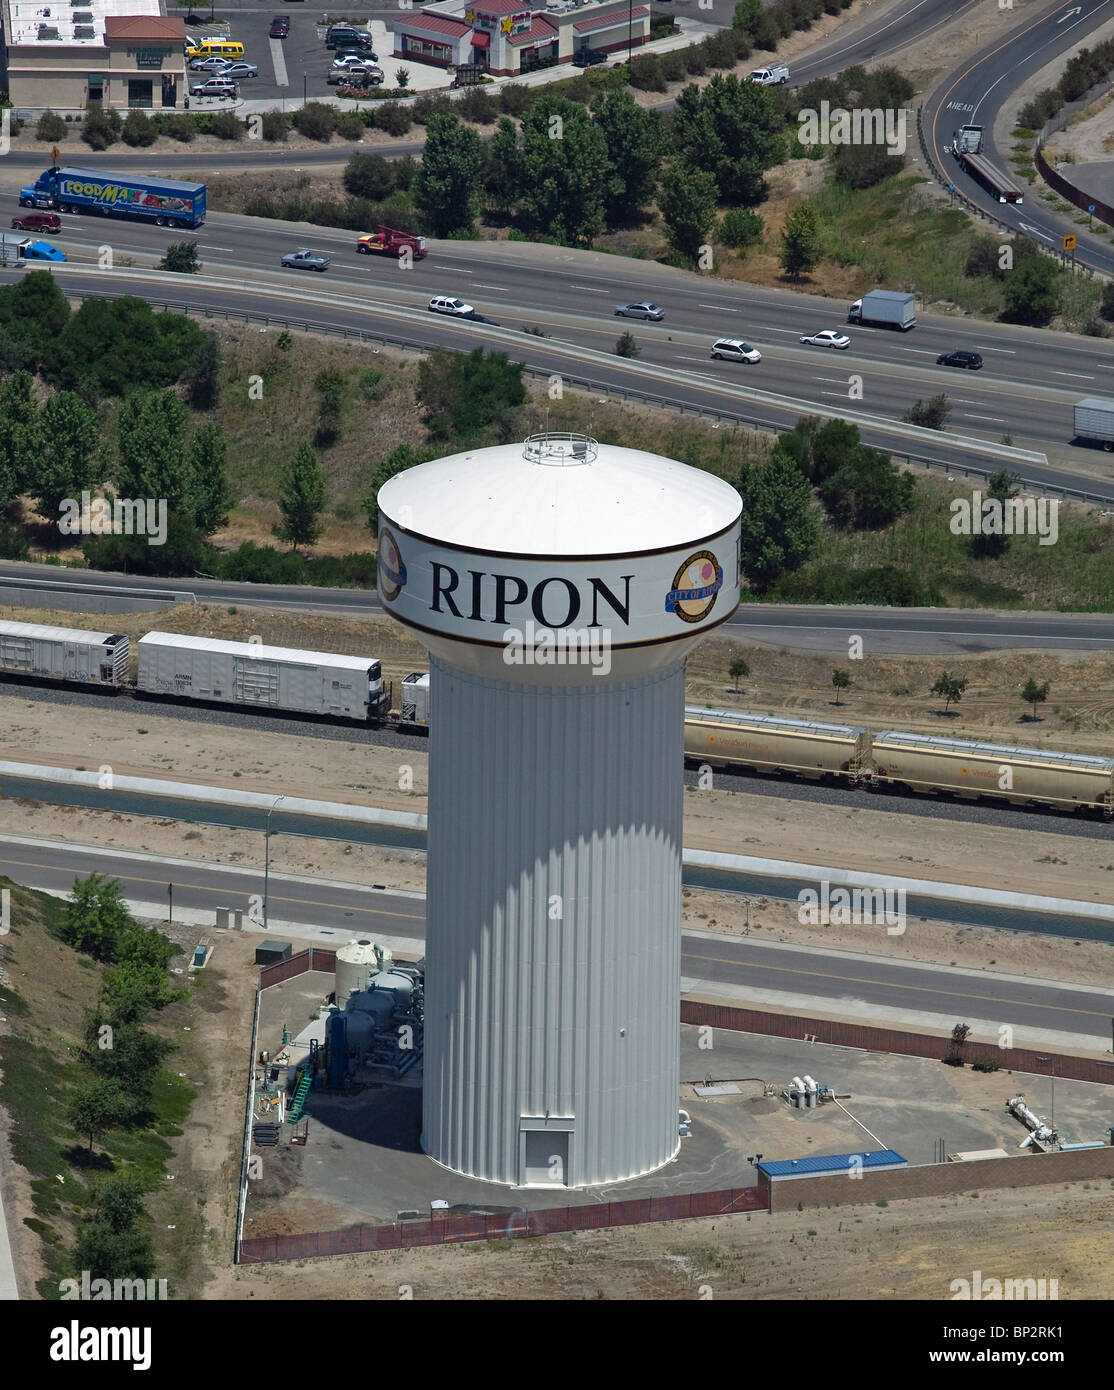 Luftbild oben Wasserturm Highway 99 VeraSun Railorad Autos Ripon California Stockfoto